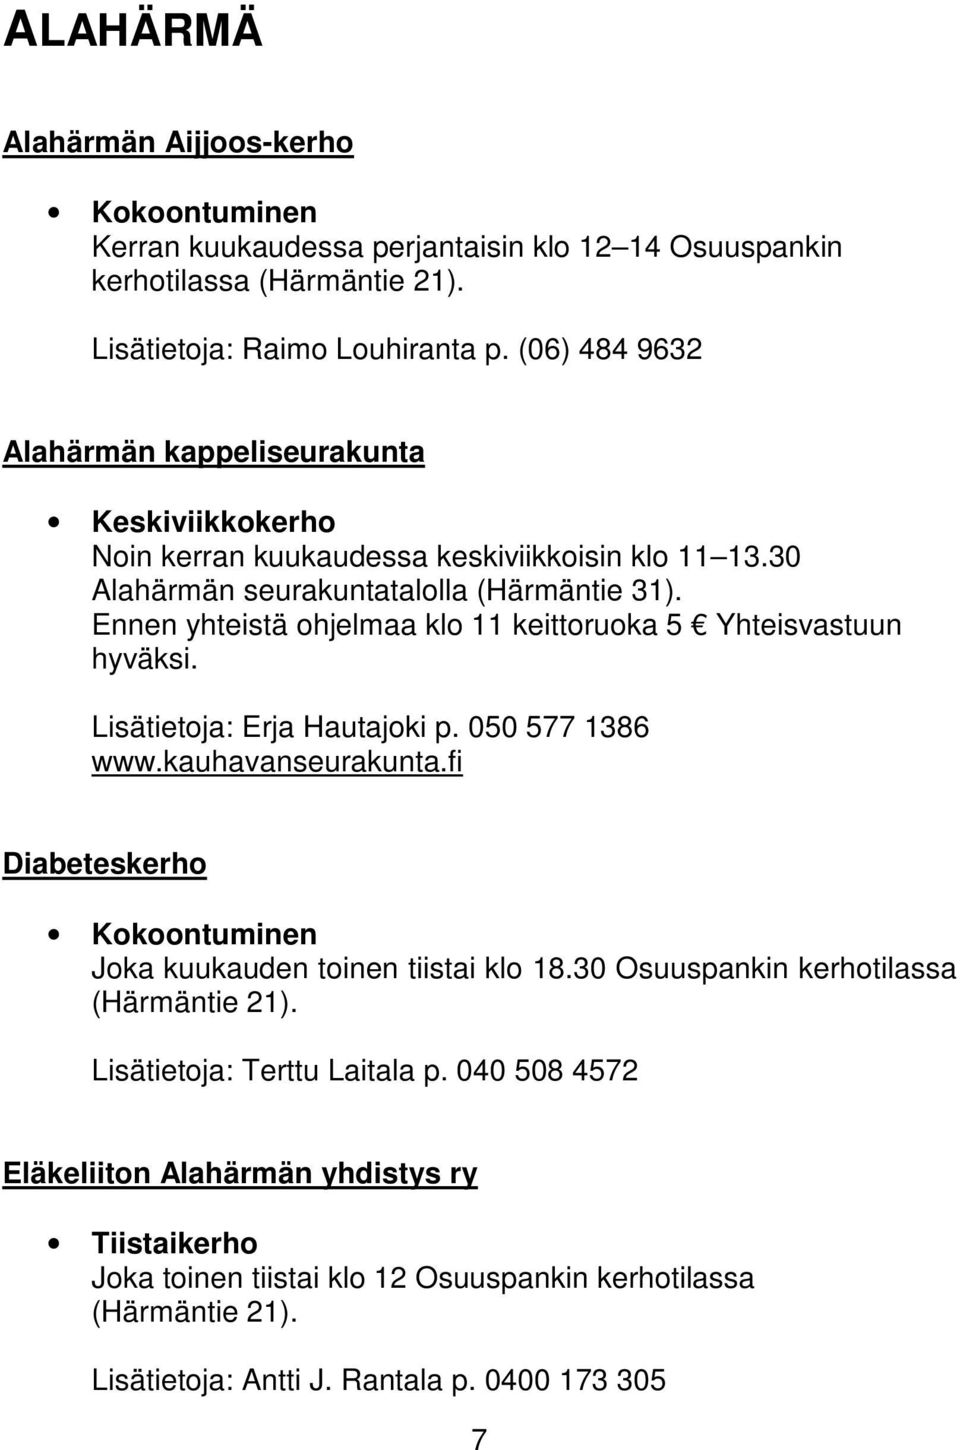 Ennen yhteistä ohjelmaa klo 11 keittoruoka 5 Yhteisvastuun hyväksi. Lisätietoja: Erja Hautajoki p. 050 577 1386 www.kauhavanseurakunta.